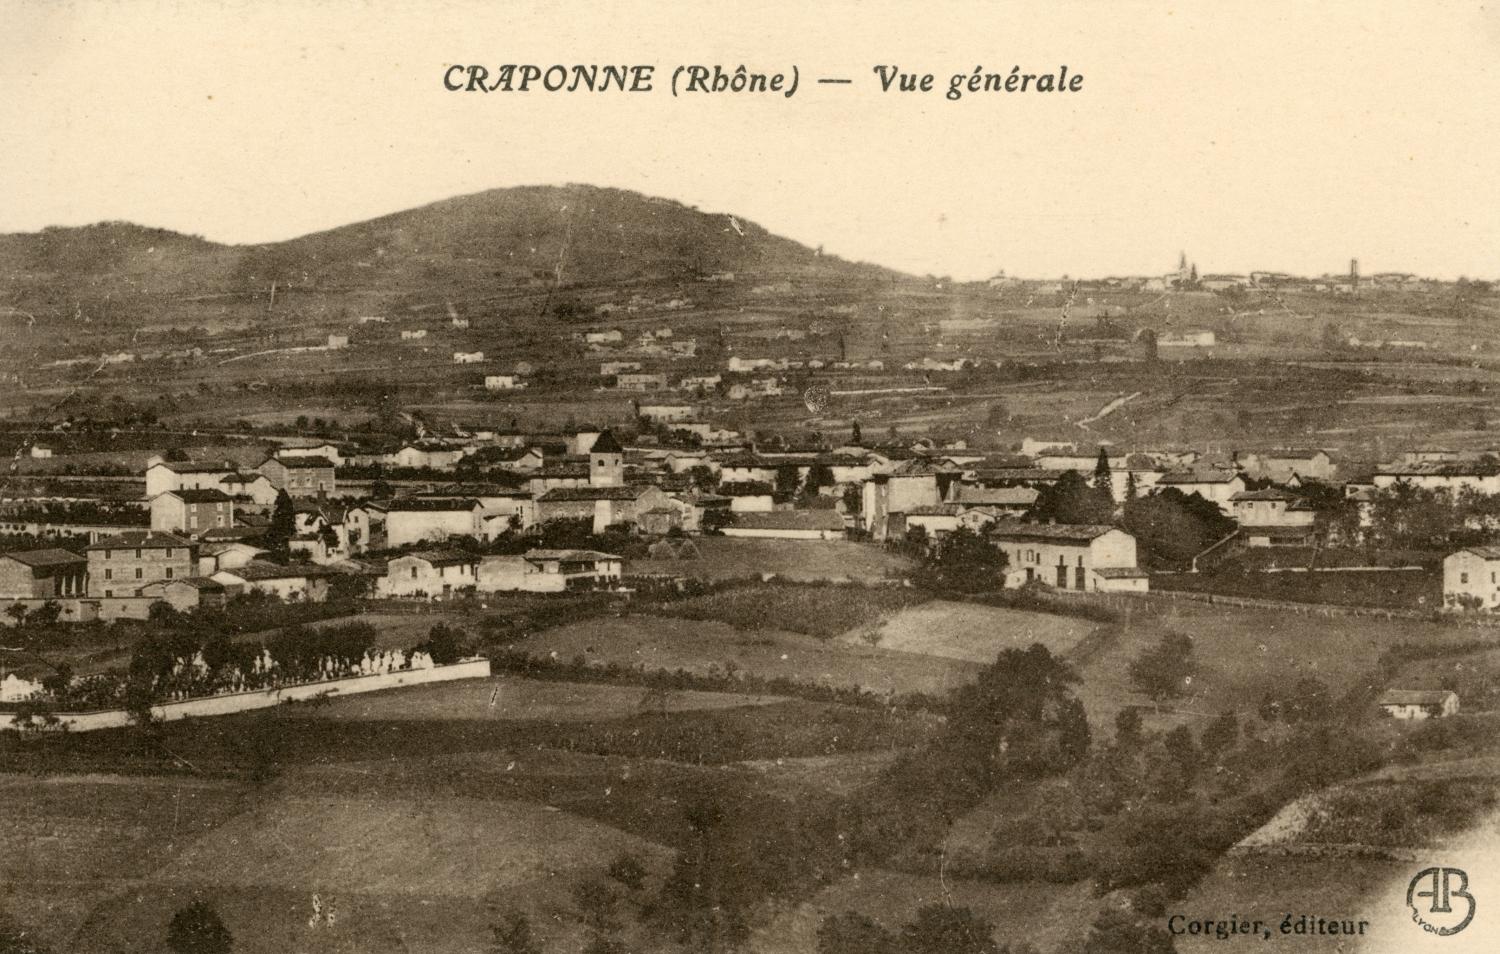 Craponne (Rhône). - Vue générale